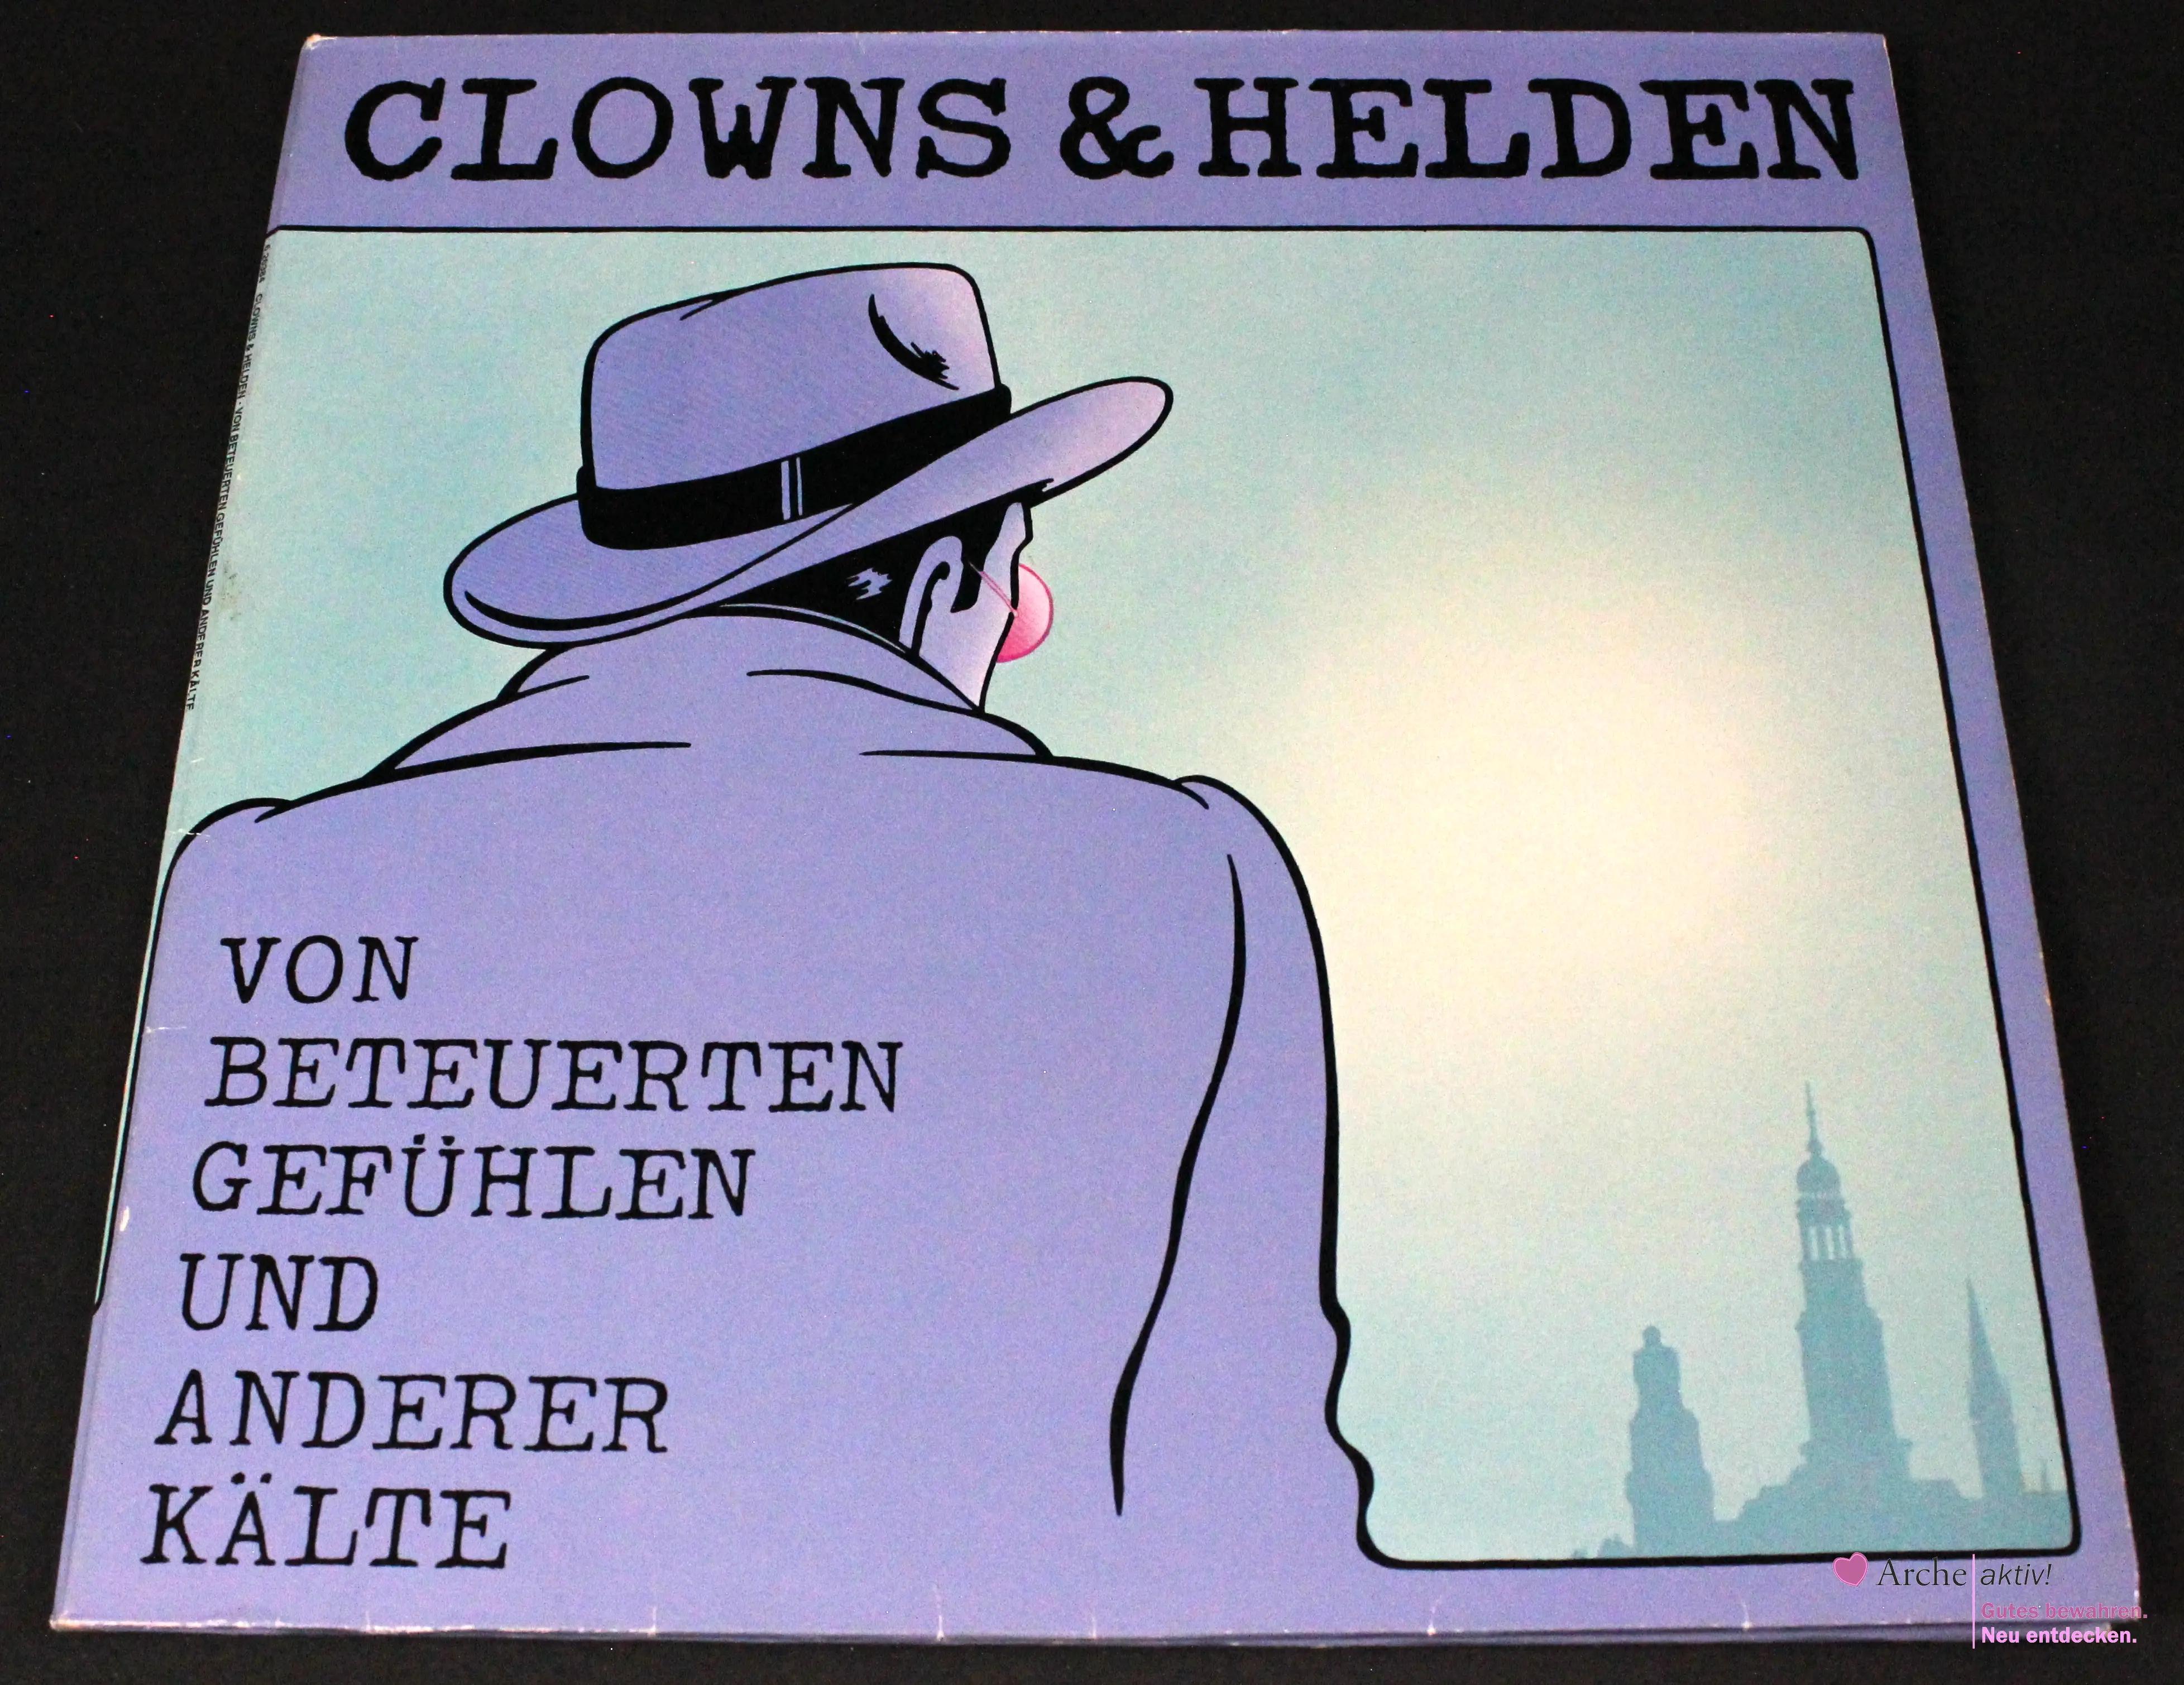 Clowns & Helden - Von Beteuerten Gefühlen Und Anderer Kälte (Vinyl) LP, gebraucht